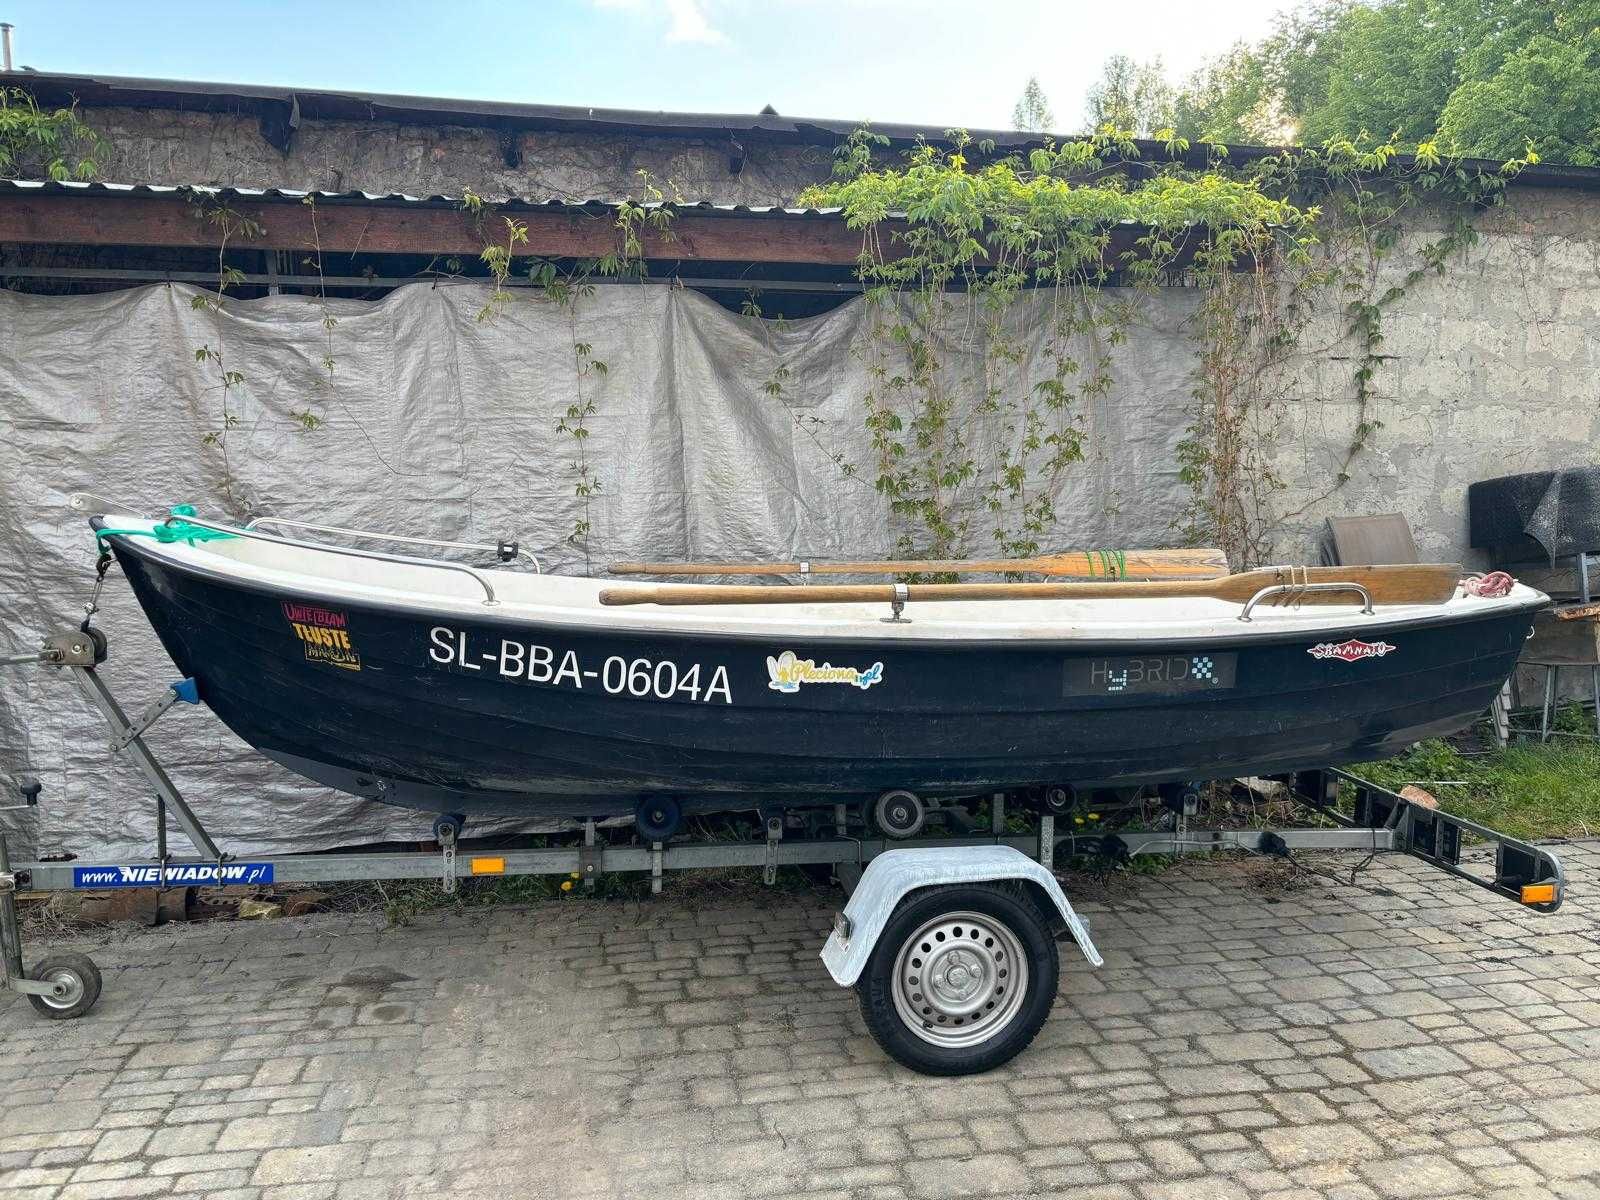 Sprzedam łódź Oliwia 4,20m wraz z podłodziówką Niewiadów.